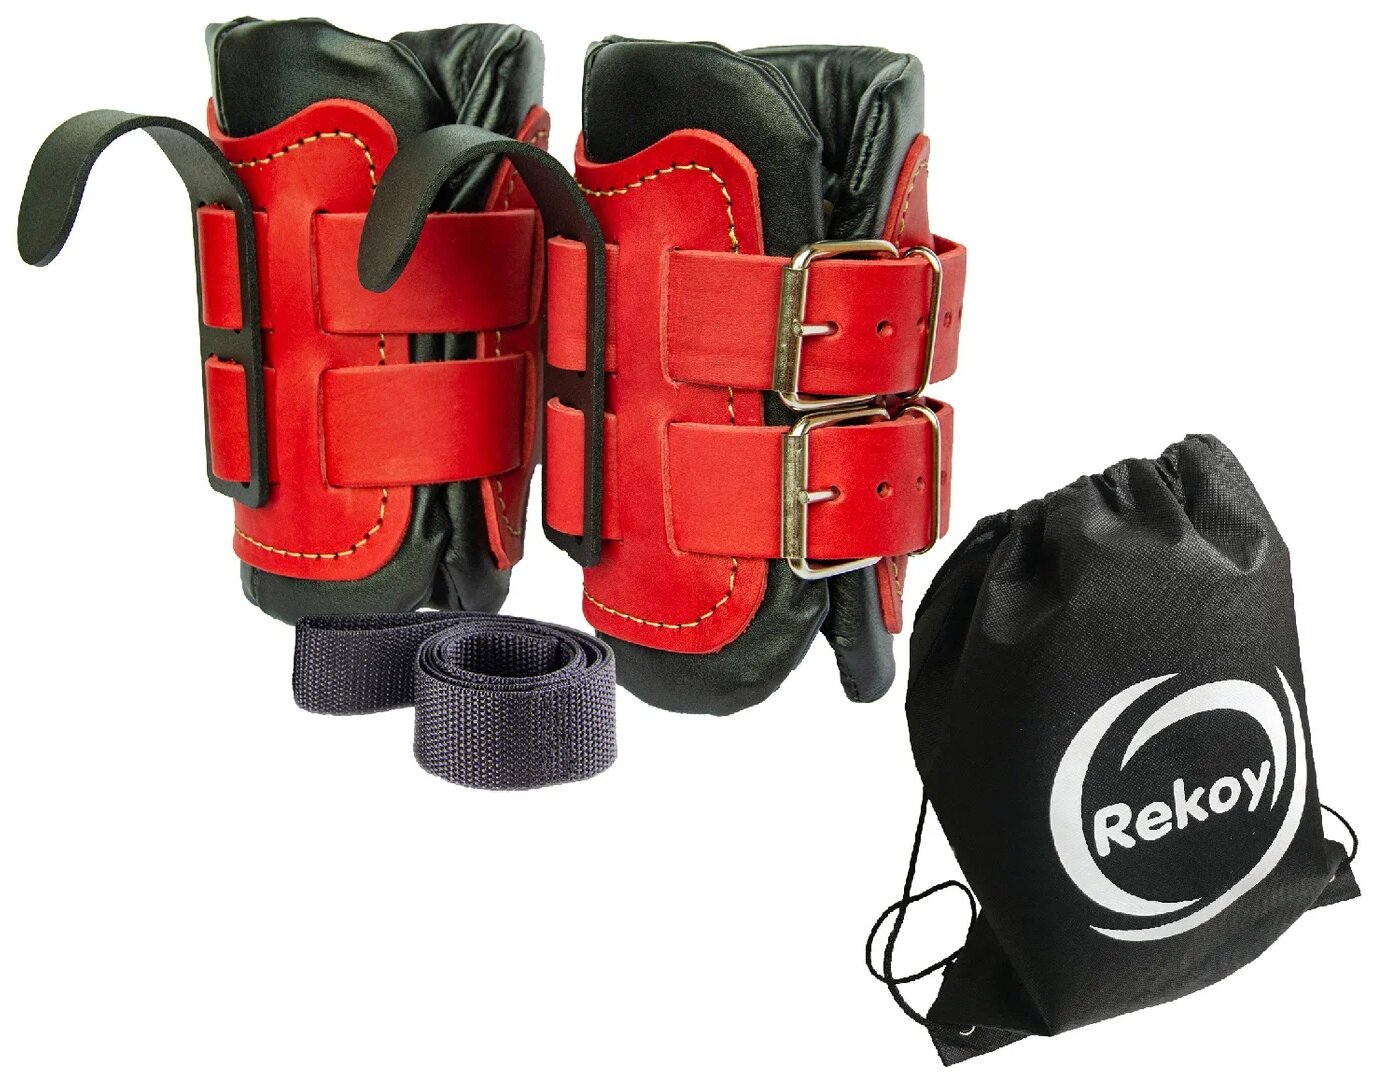 Ботинки гравитационные (инверсионные) ReKoy F104K кожаные, лямка страховочная, рюкзак на шнурках